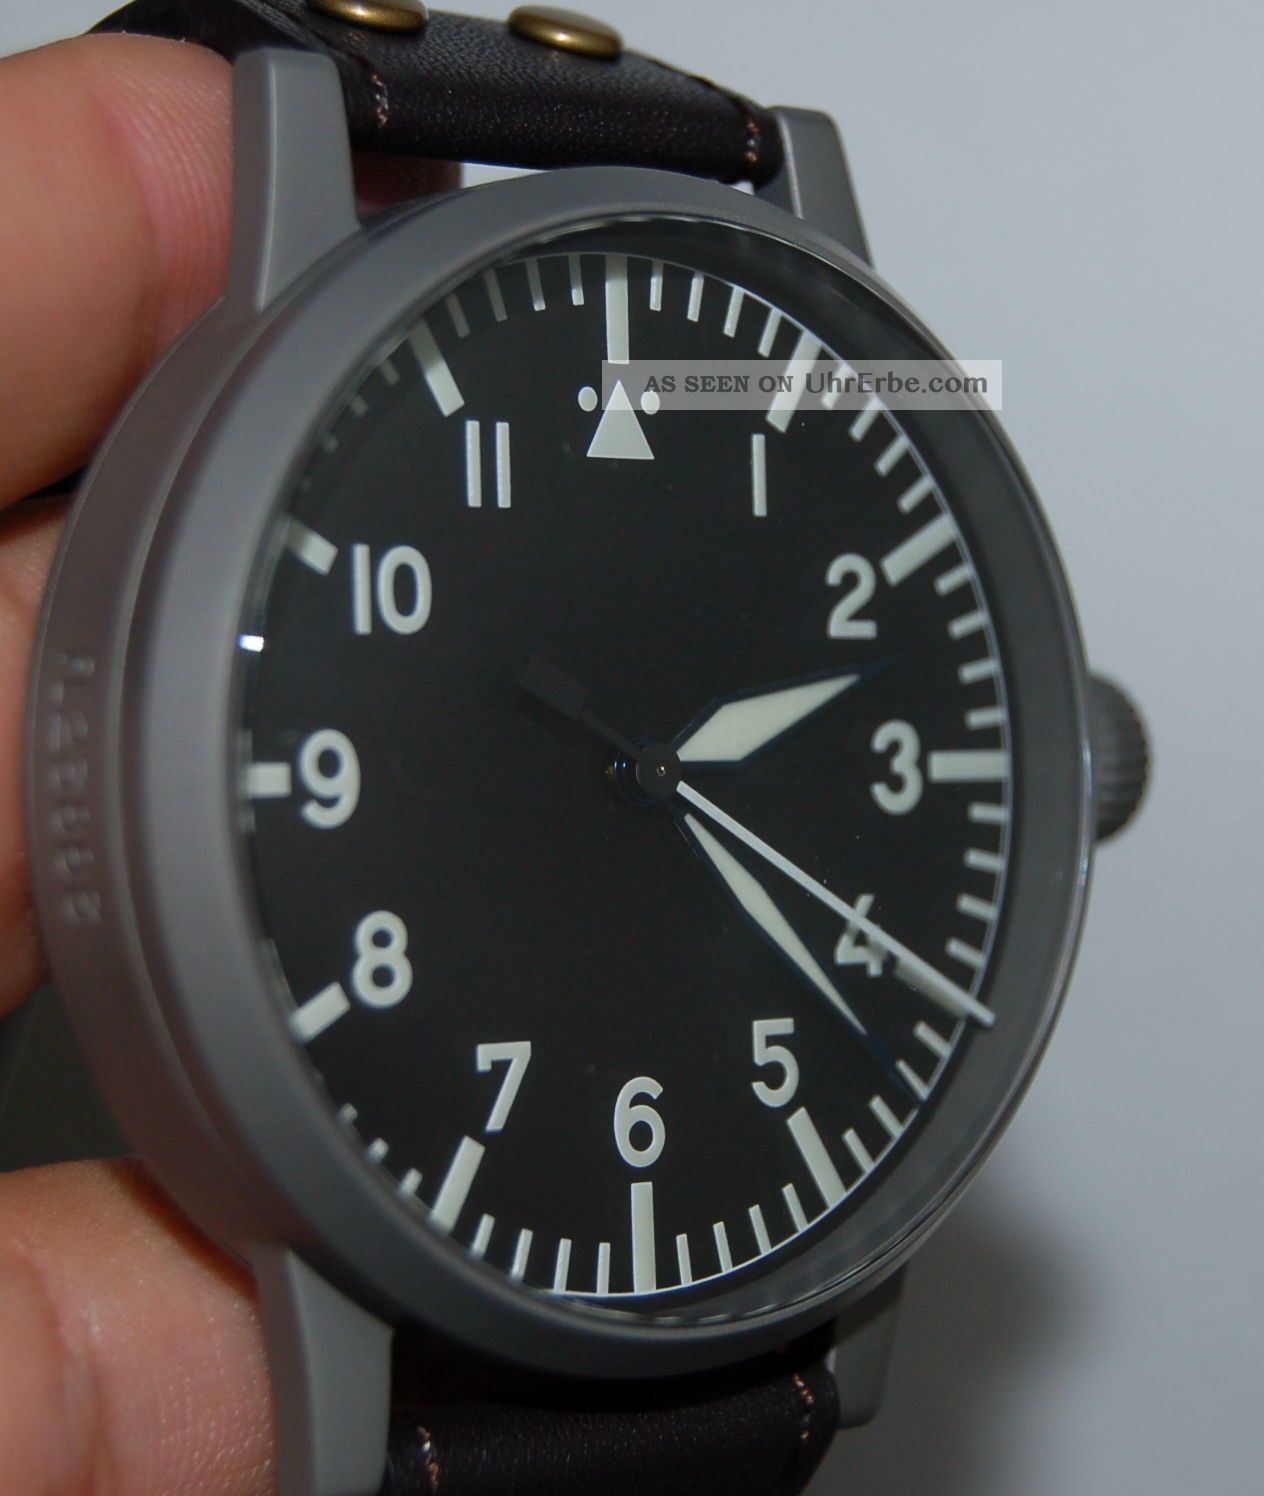 Laco Flieger B - Uhr Baumuster A 55mm Fl23883 Limitiert Limited 50st, Armbanduhren Bild